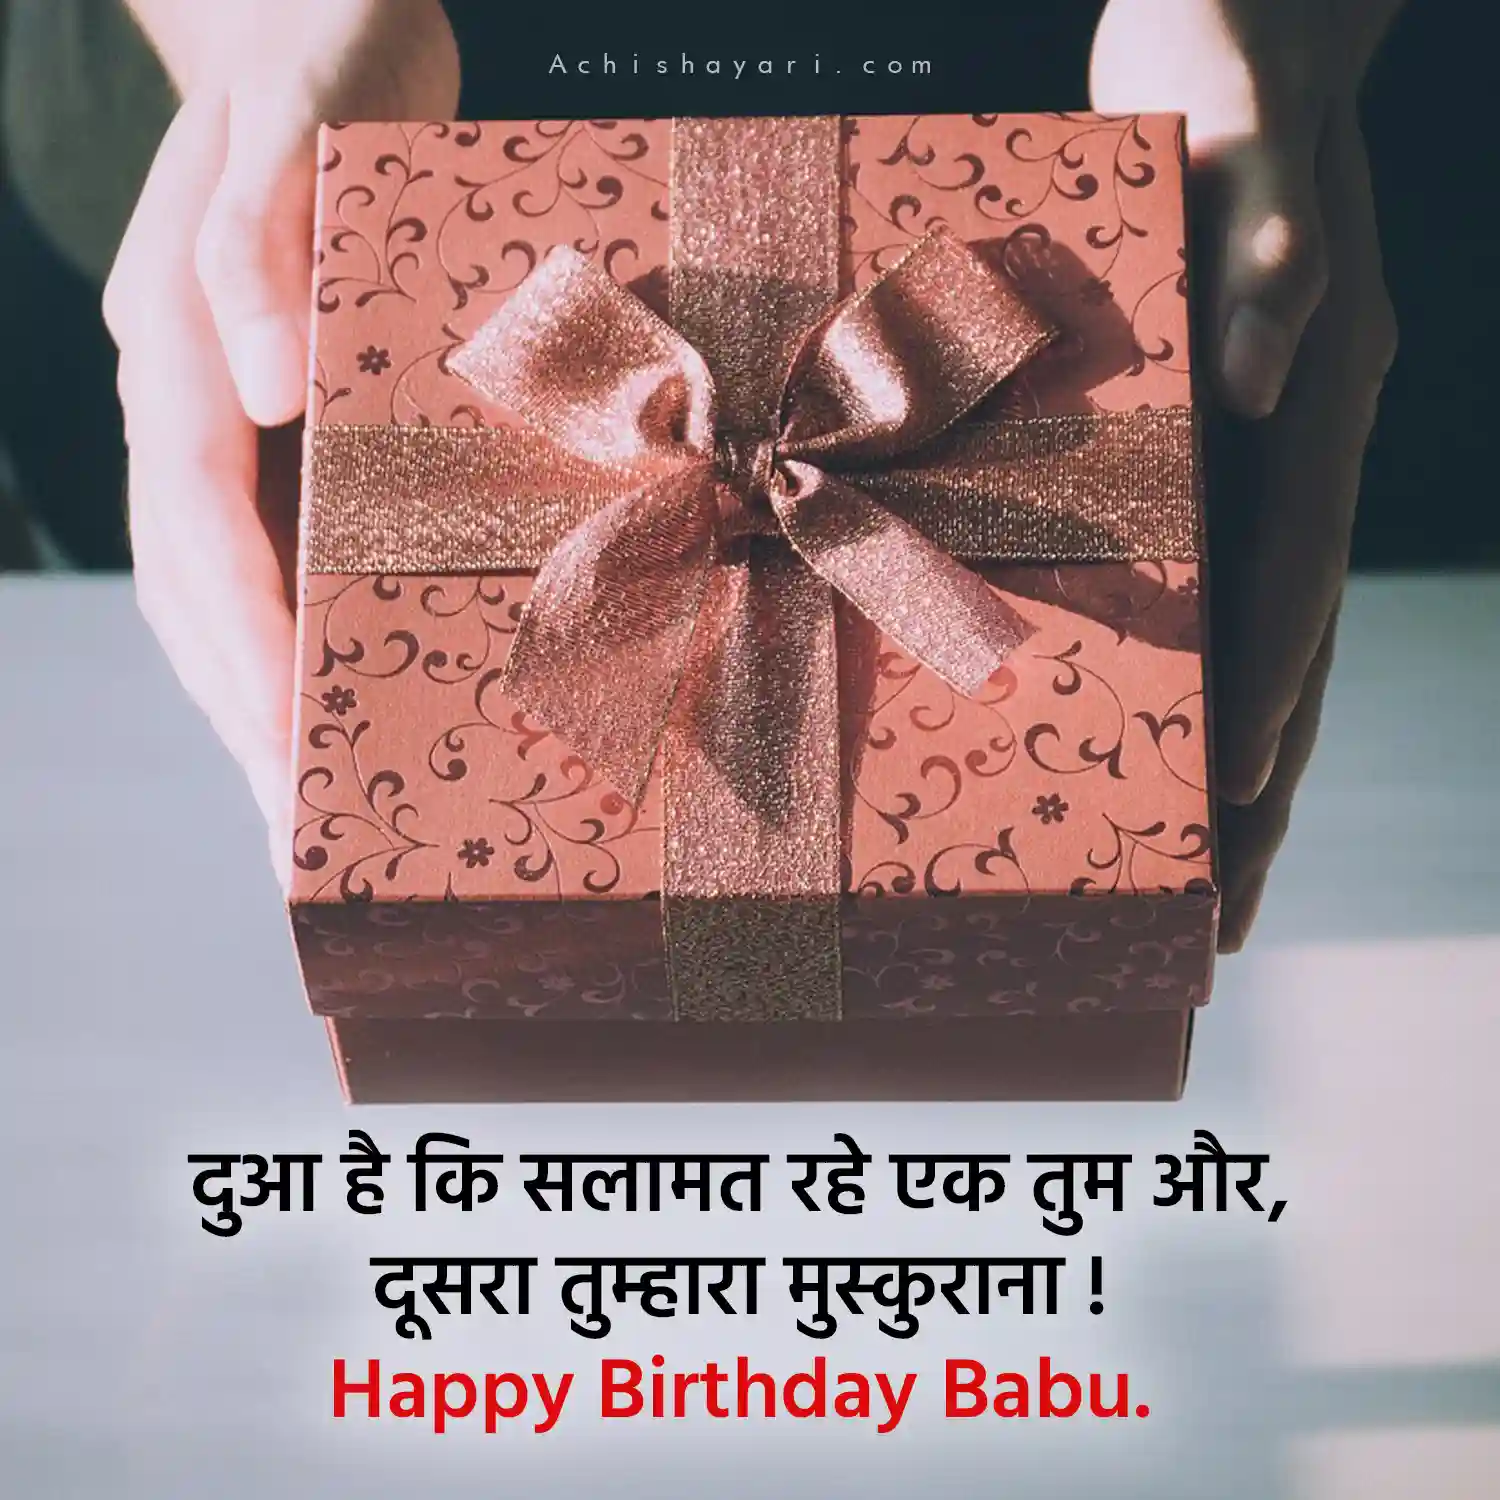 Happy Birthday Babu